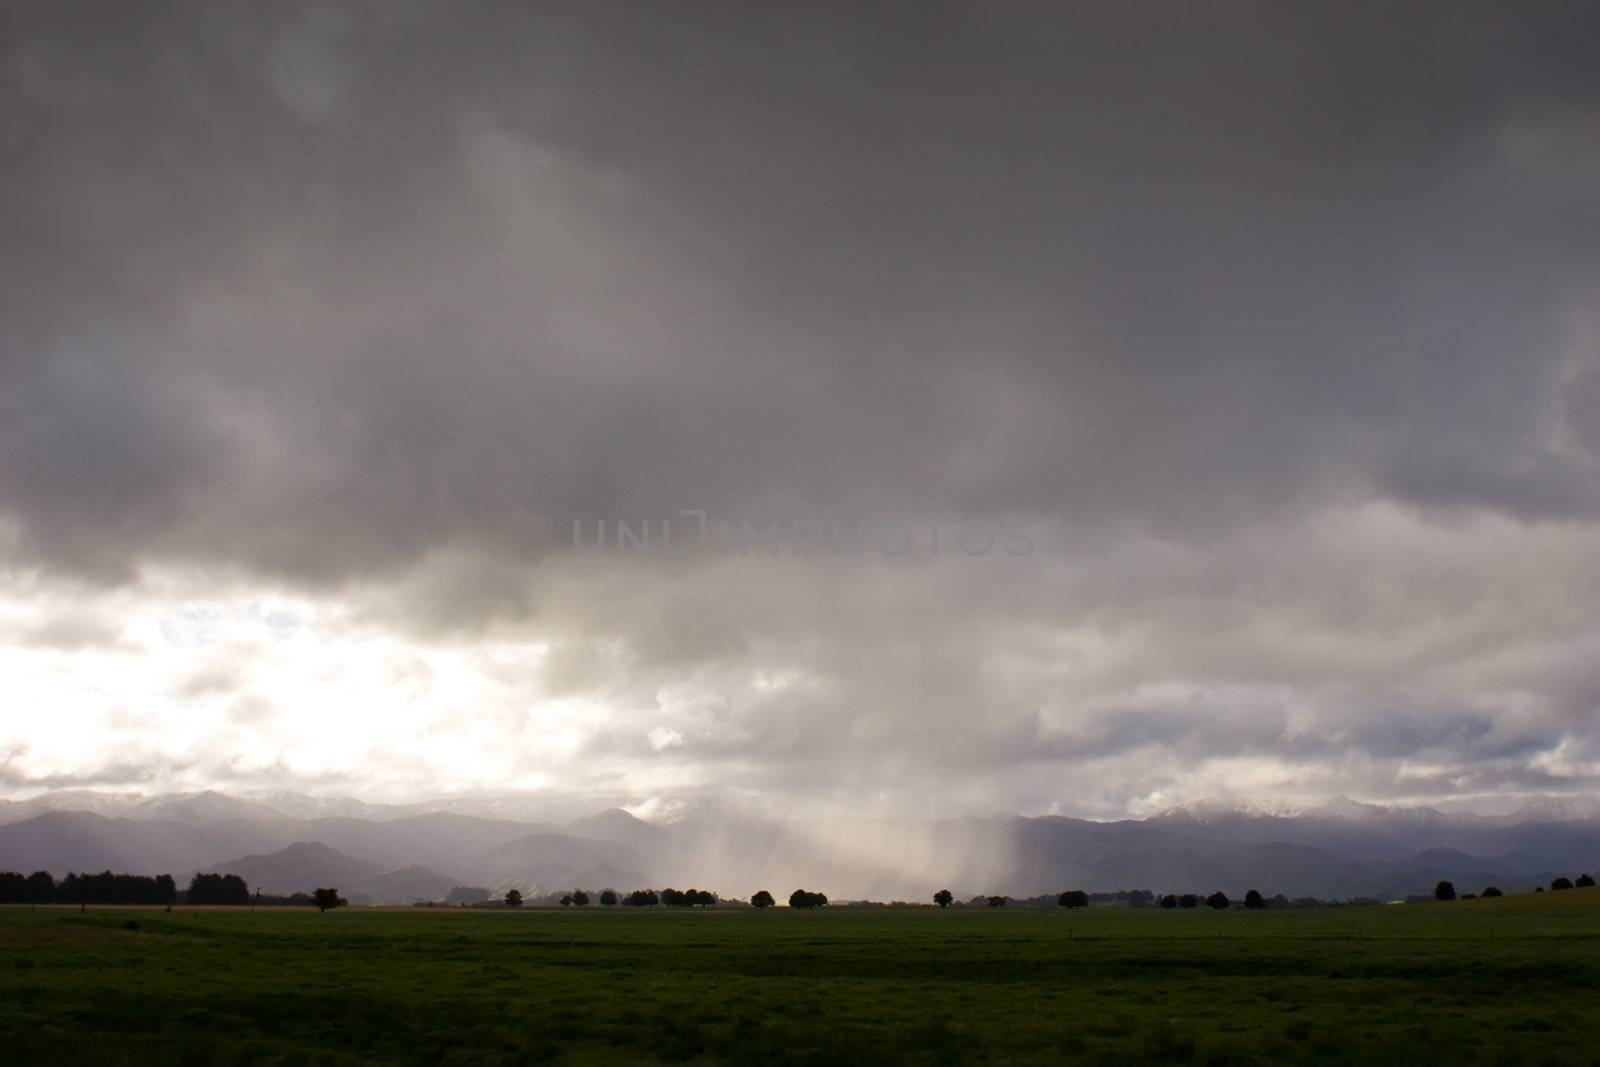 Rain veiling the Ruahine Ranges in Southern Hawke's Bay, New Zealand